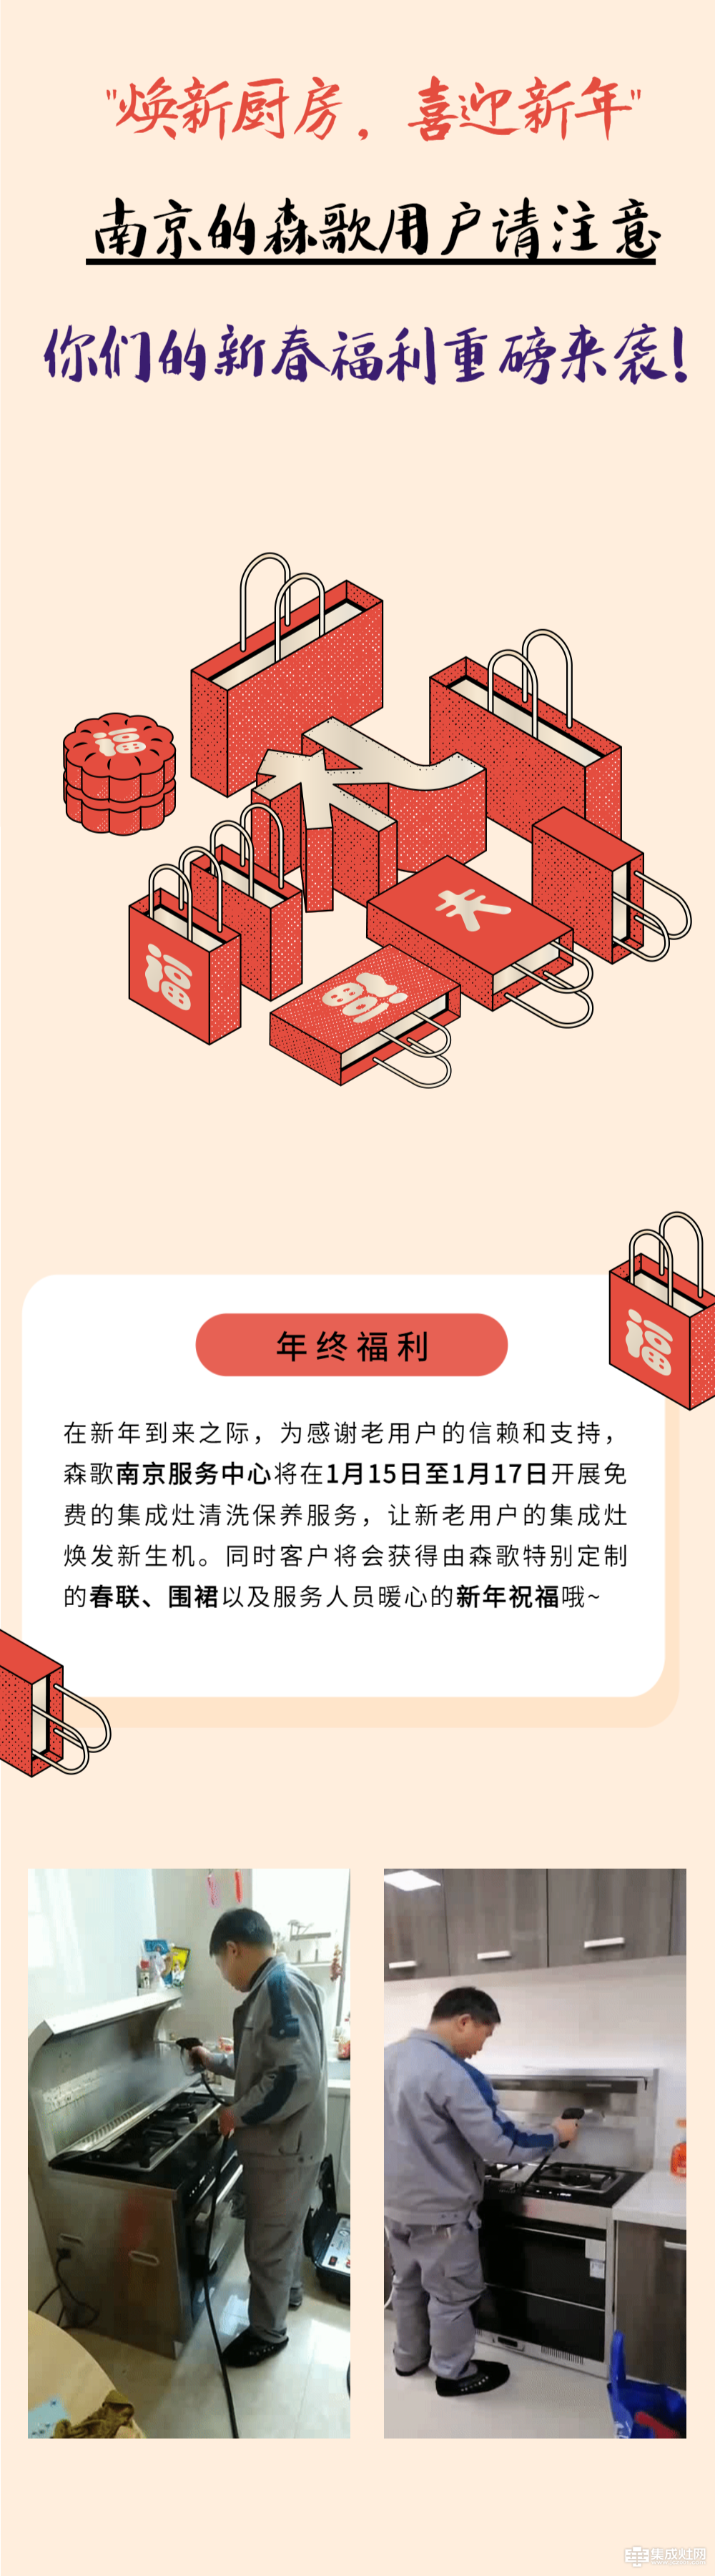 叮 森歌发来一条新信息 南京区域免费清洗活动重磅来袭